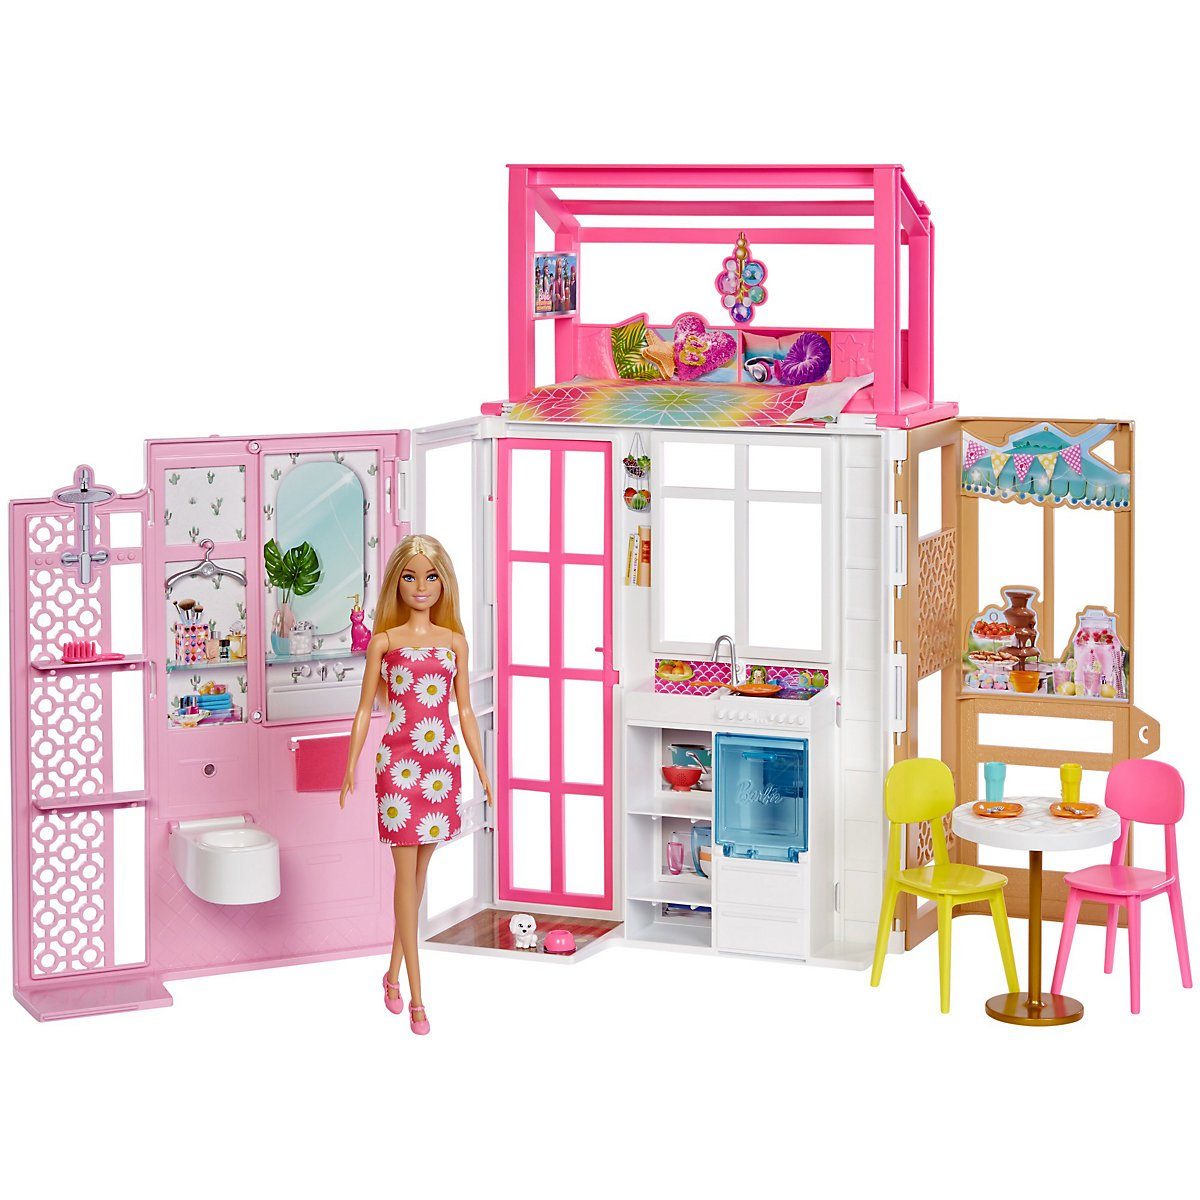 DIY Puppenhaus Puppenvilla Dollhouse Barbiehaus Spielzeughaus Spielhaus+3 Puppe 